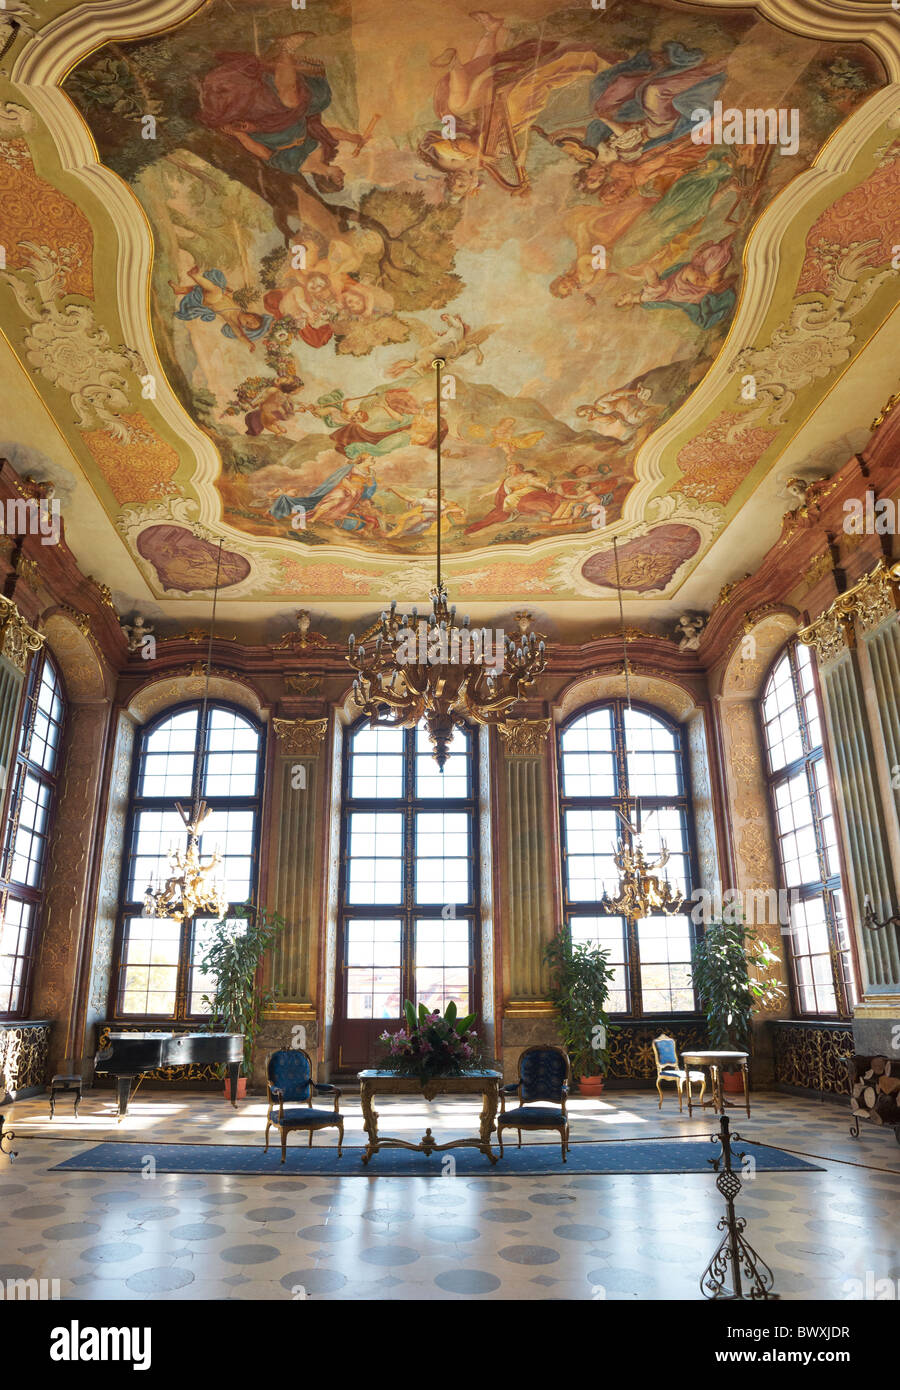 Ksiaz castle - interior - Maksymilian Hall, Sudeten mountains, Silesia, Poland Stock Photo